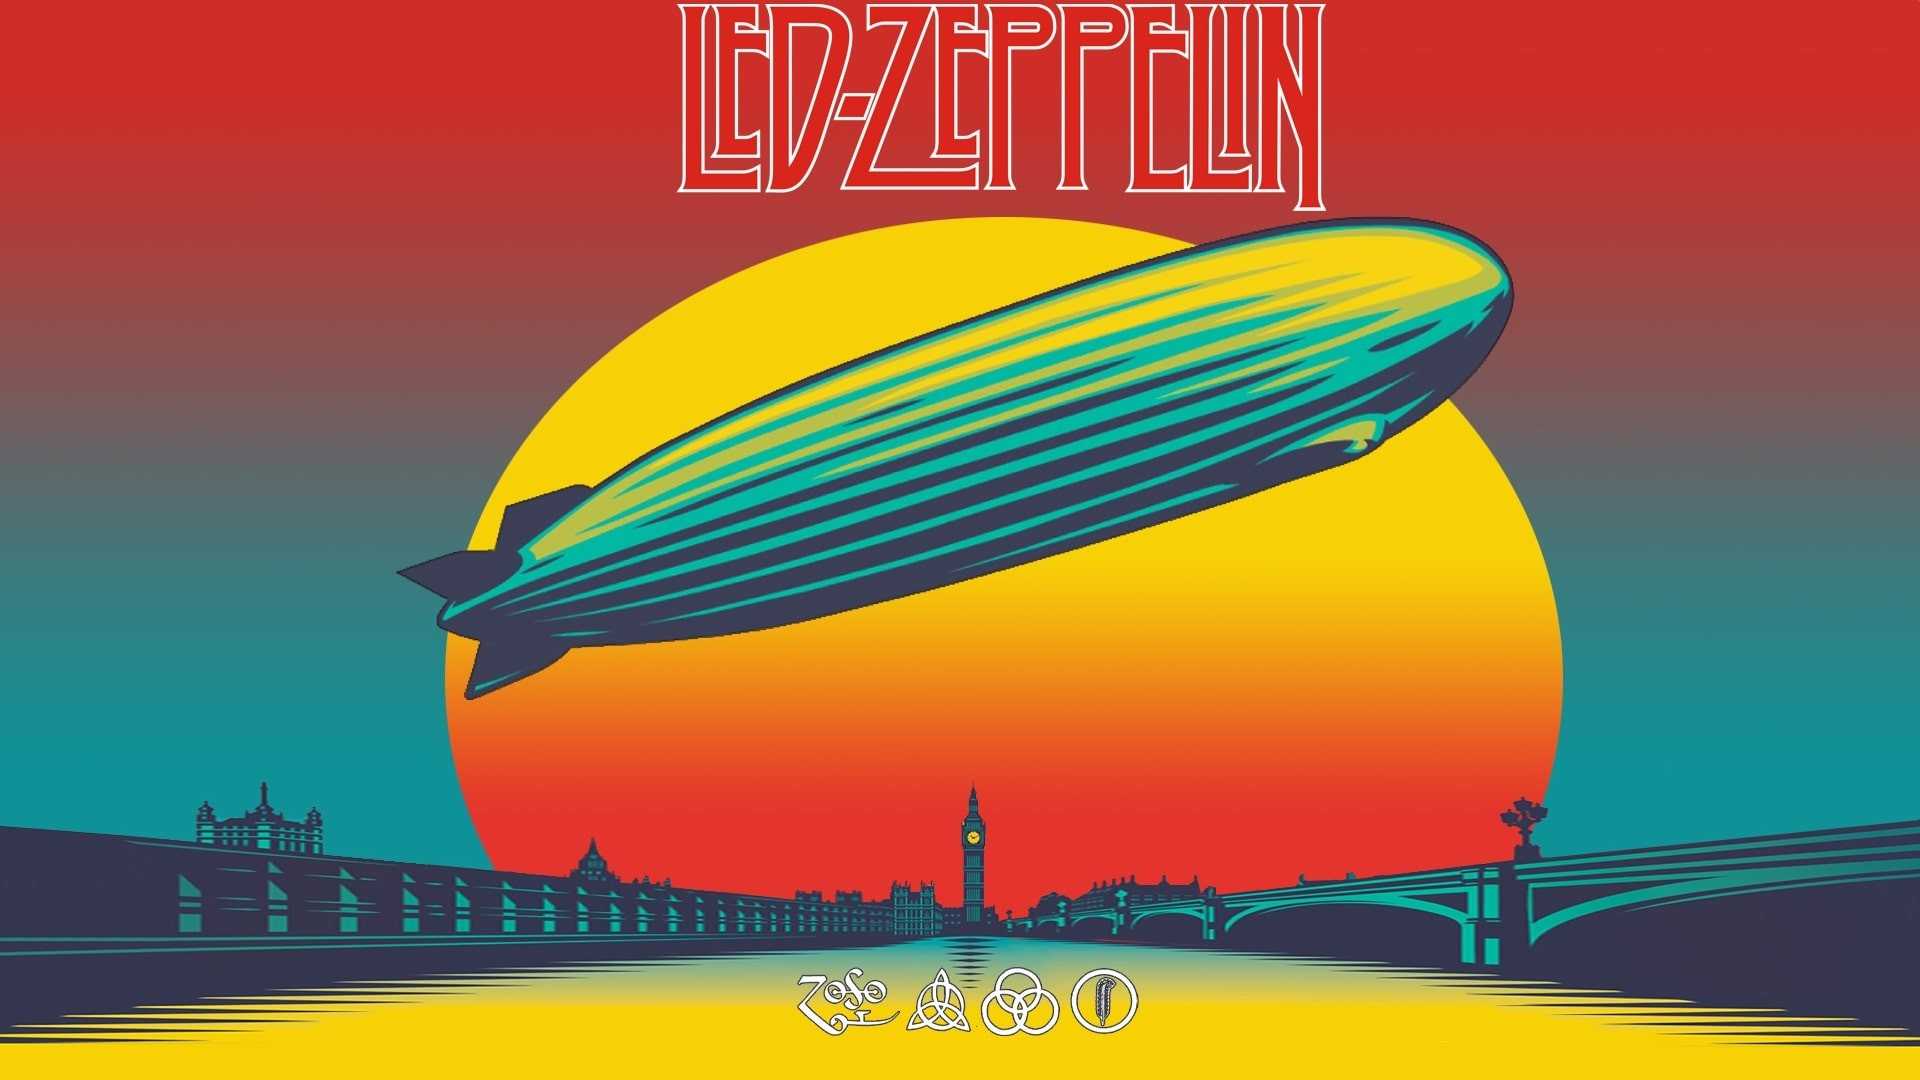 Macbook Led Zeppelin Wallpaper 1